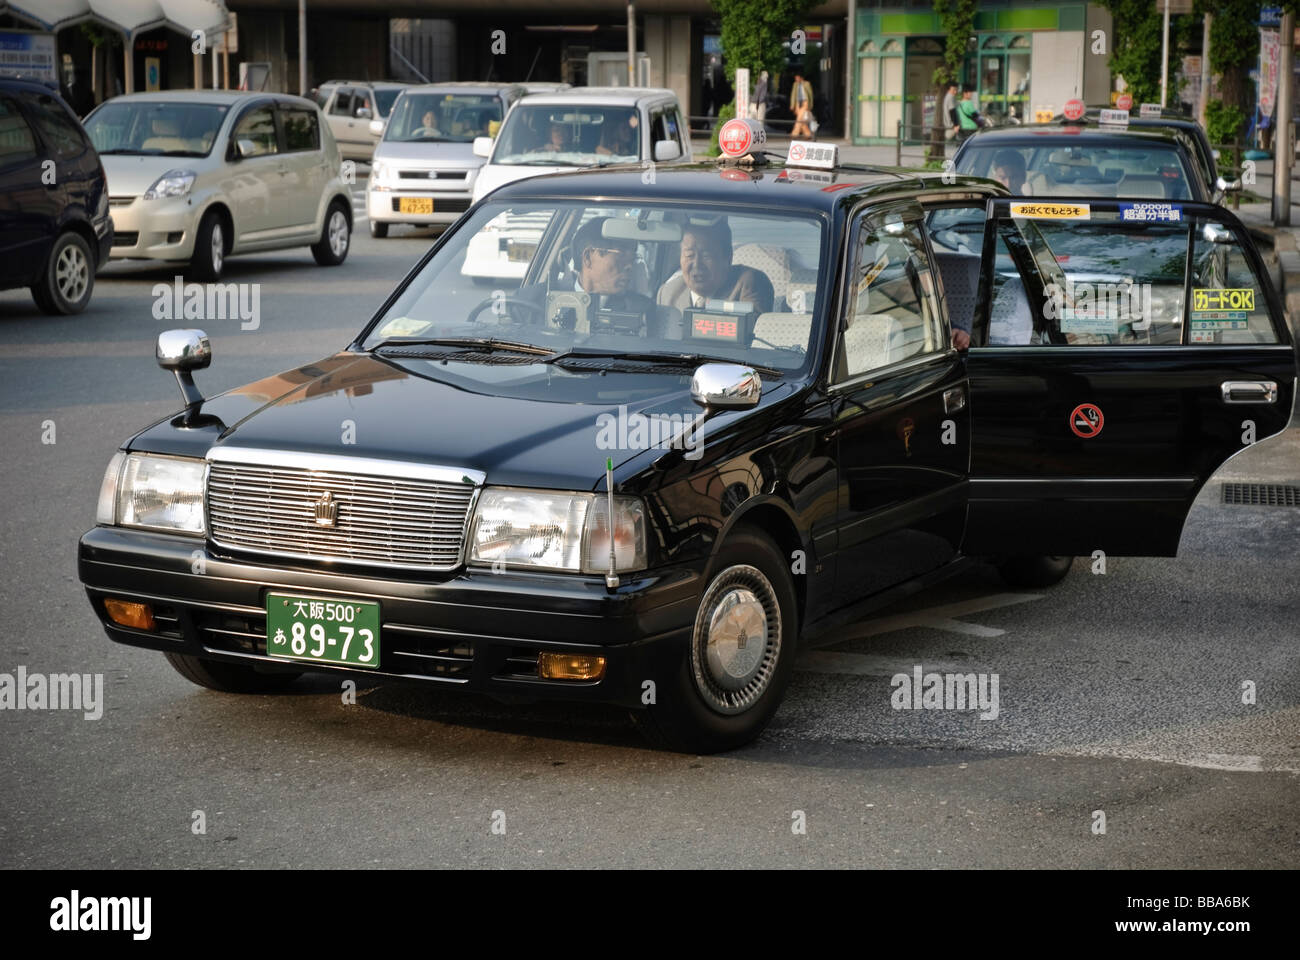 Diese schwarze Taxi, einen Toyota Crown Comfort ist sehr typisch für diejenigen in Japan gesehen. Stockfoto